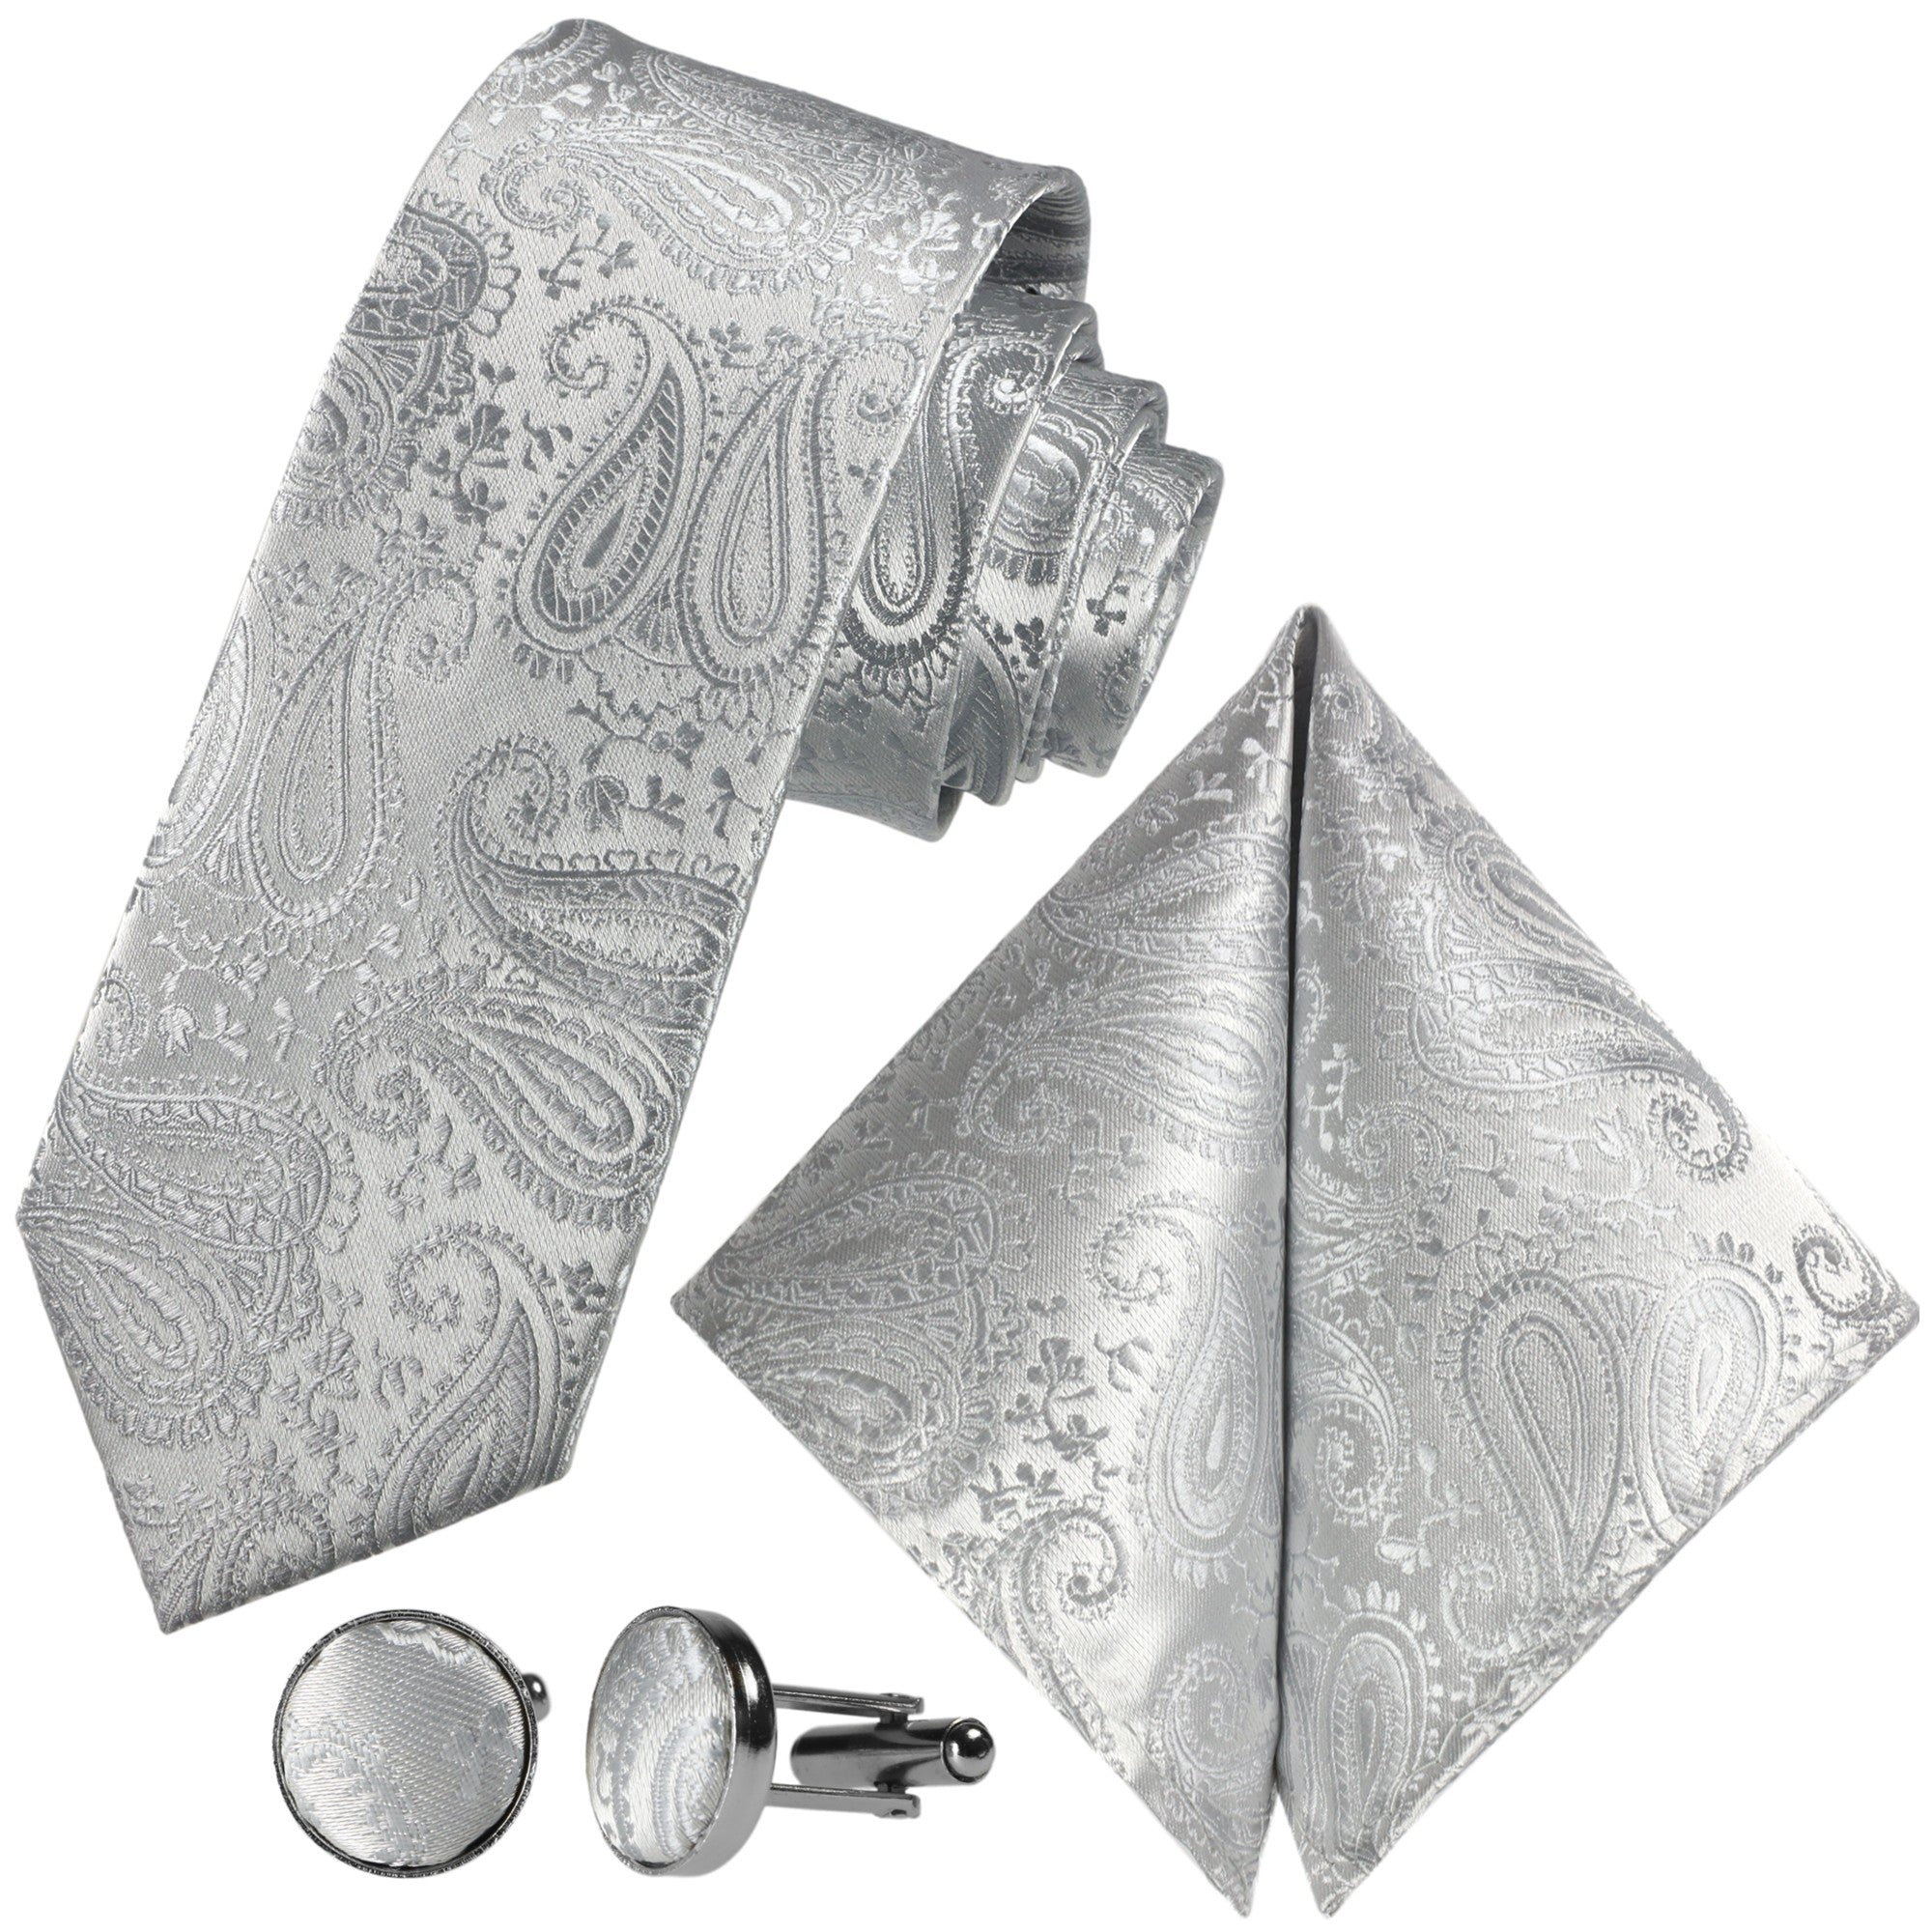 Kaufen Sie GASSANIshop.de Paisley-Krawatte Silber-Graue - Krawatten Designt für | GASSANI